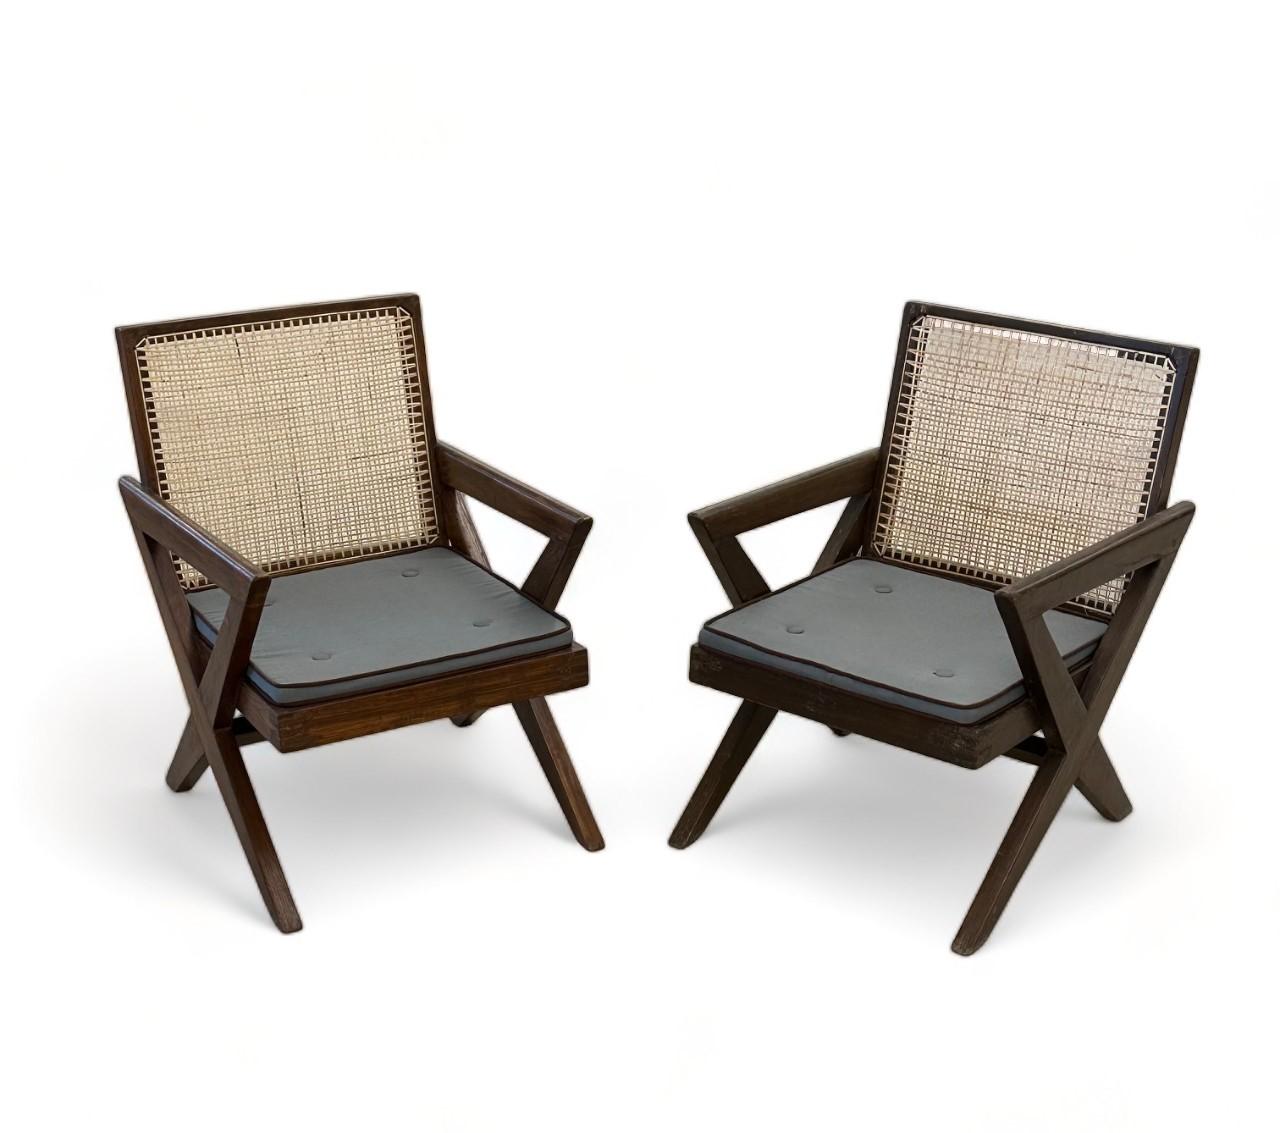 Pierre Jeanneret, Français, Mid-Century Modern, Chaises longues, Chandigarh, années 1950

Paire de rares Pierre Jeanneret 'X',  des fauteuils faciles. Ces chaises ont été légèrement lavées et polies. La canne a été refaite à la main. Elles